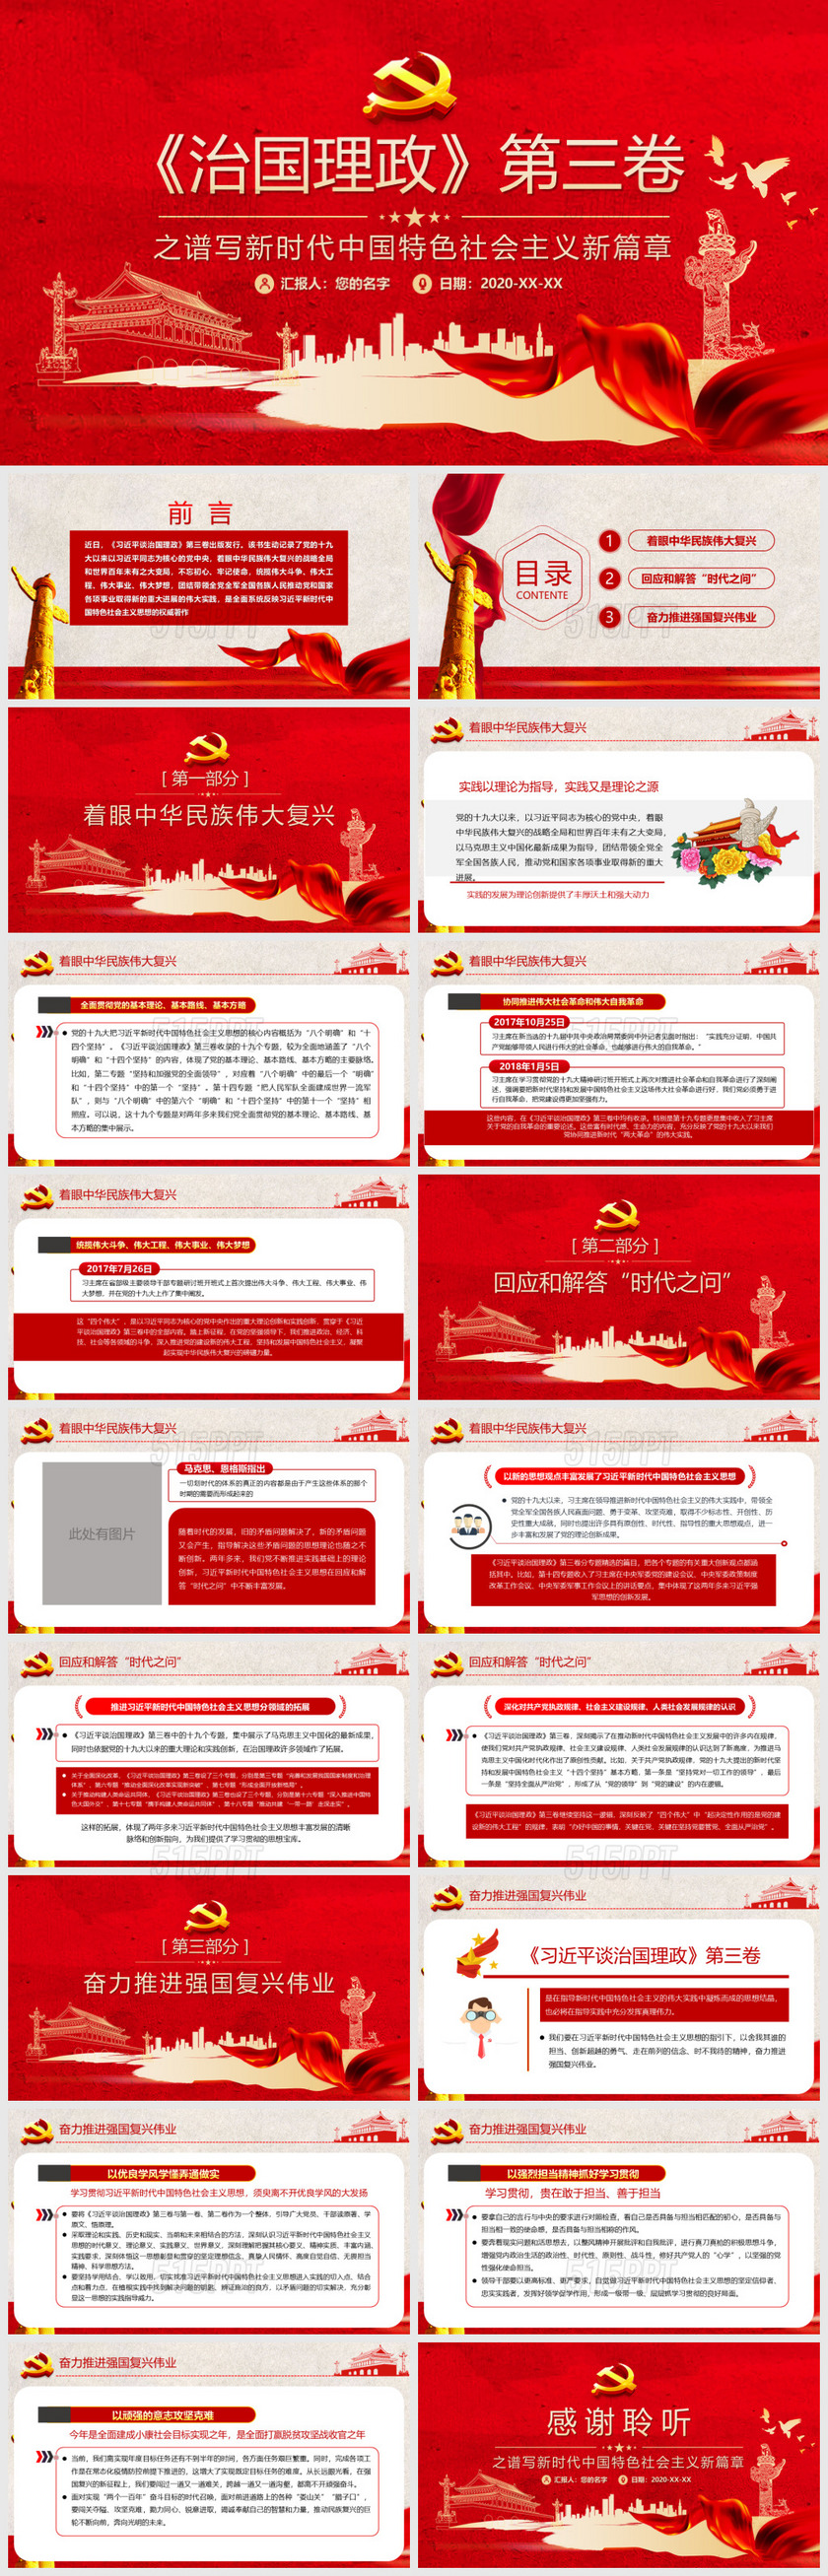 治国理政第三卷之谱写新时代中国特色社会主义新篇章PPT模板